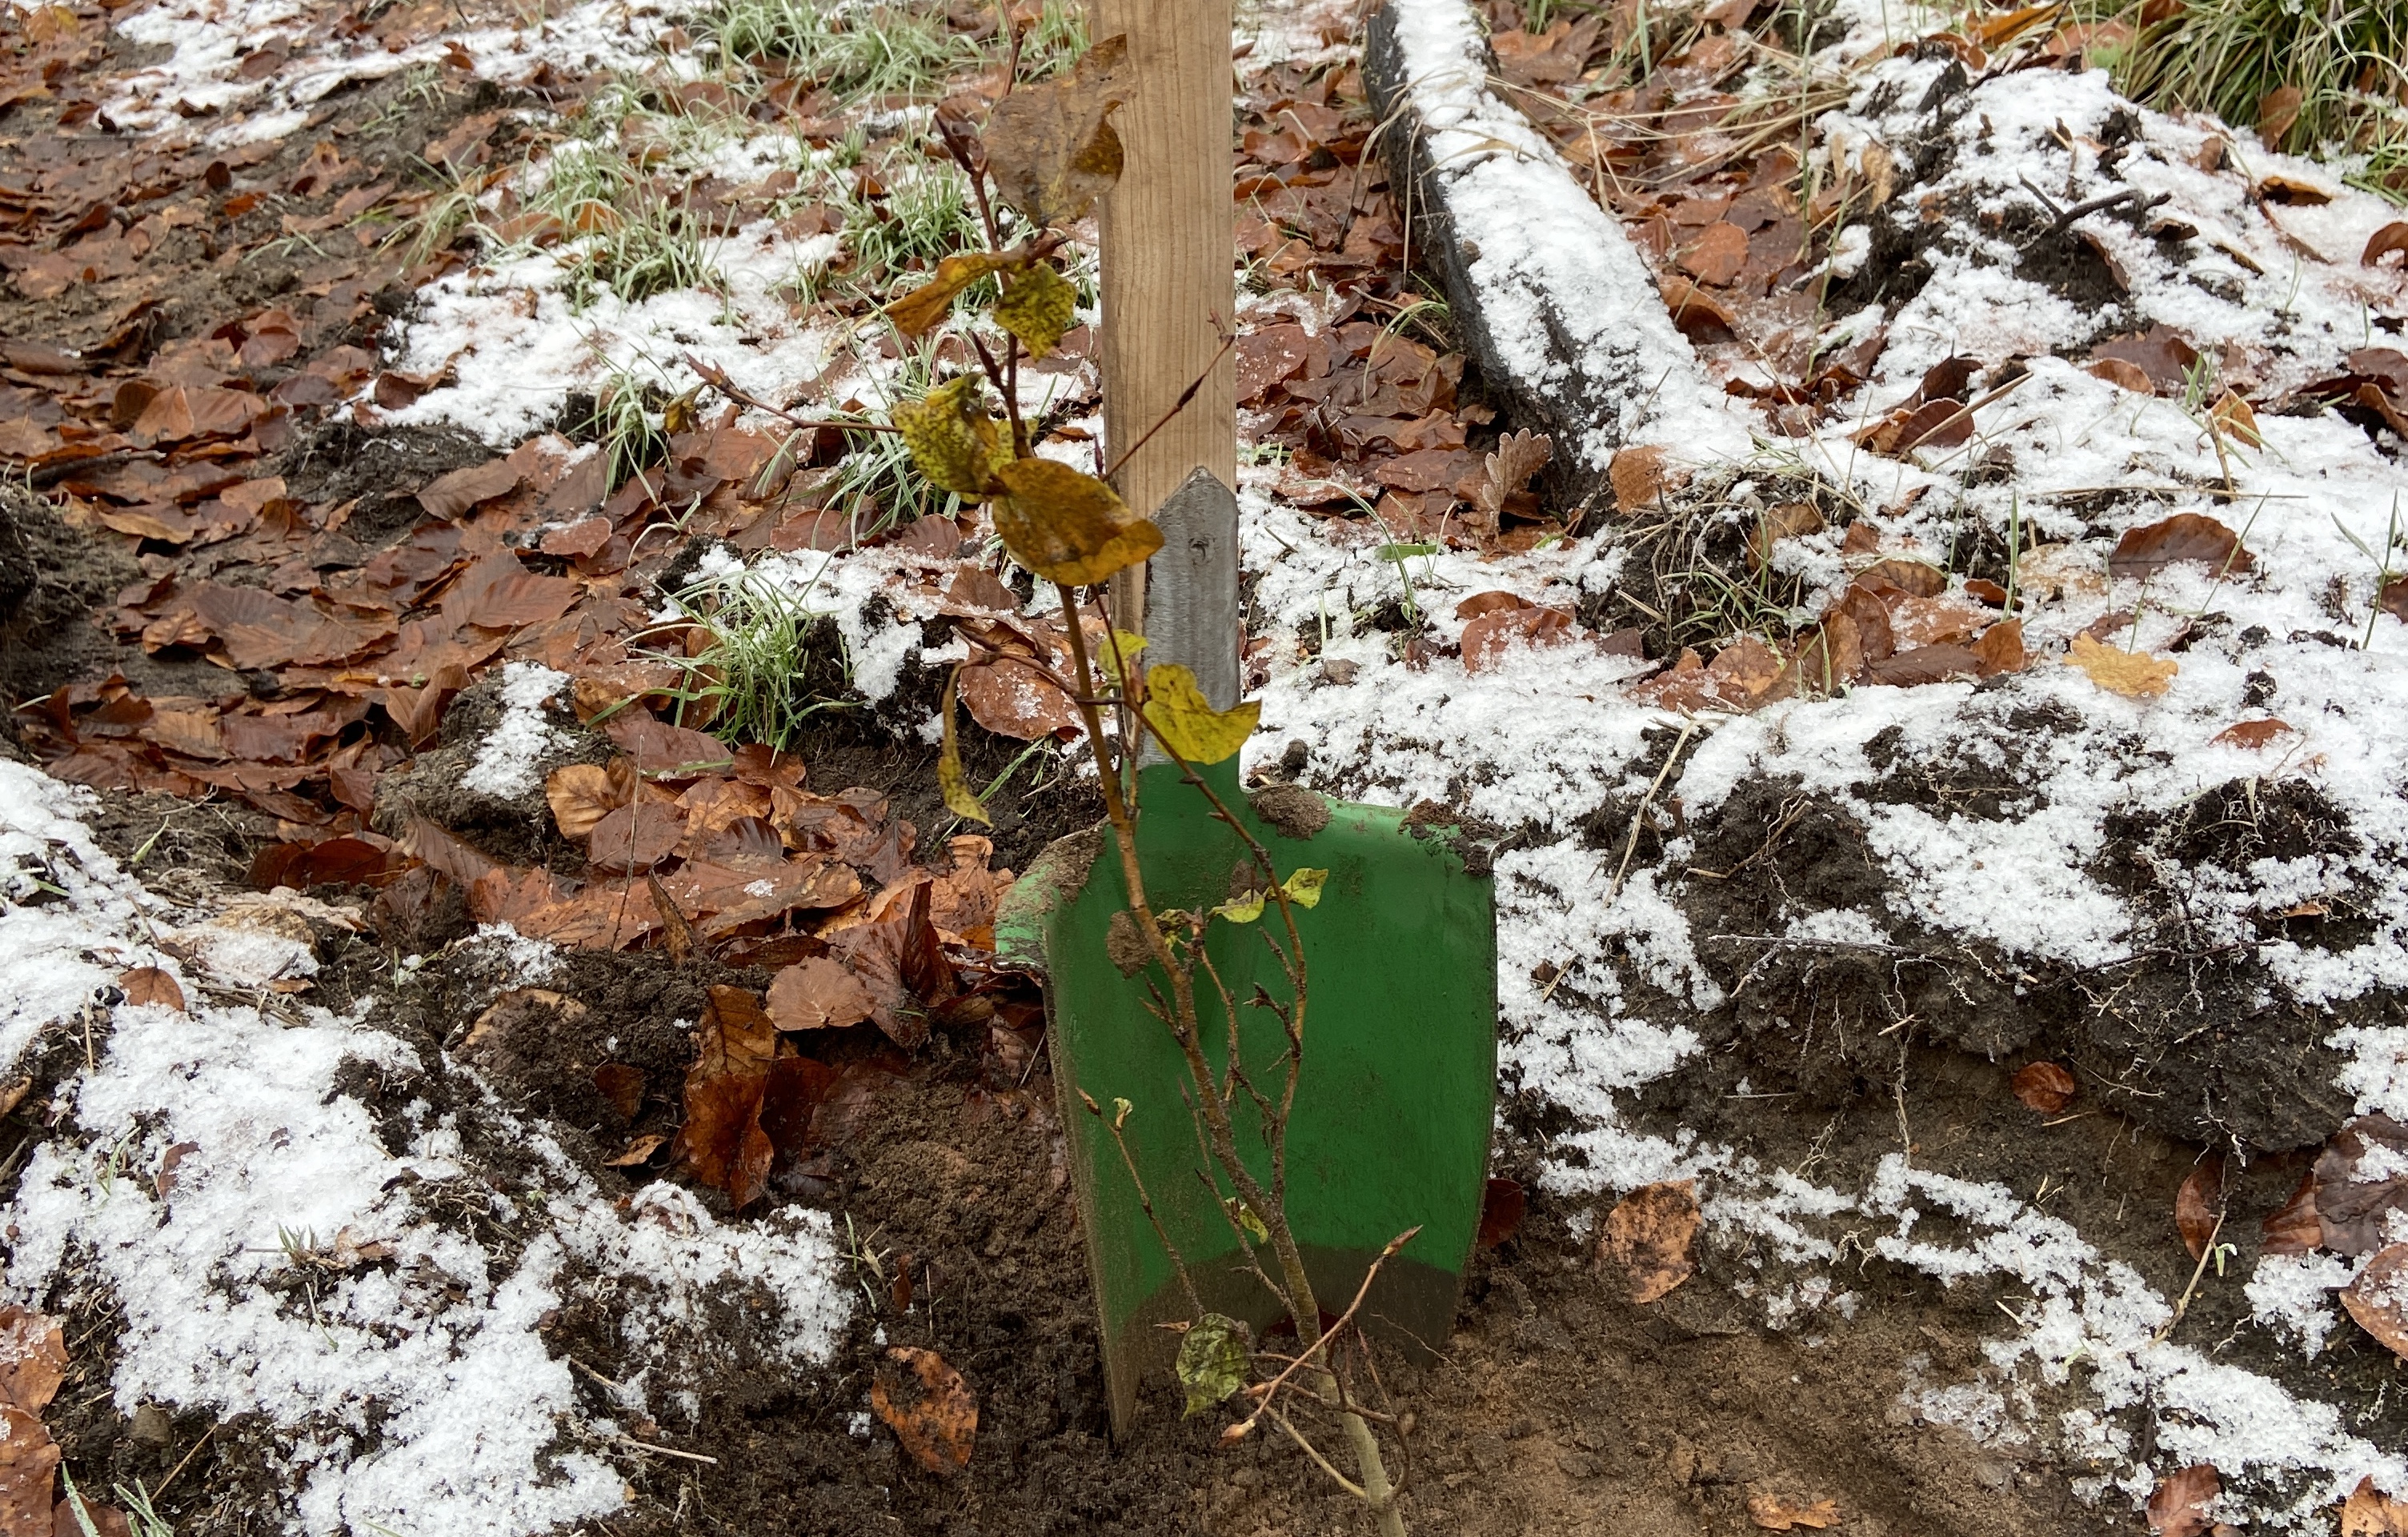 neuer Baum wird gepflanzt Spaten in schneebedecktem Boden Laub Jungpflanze